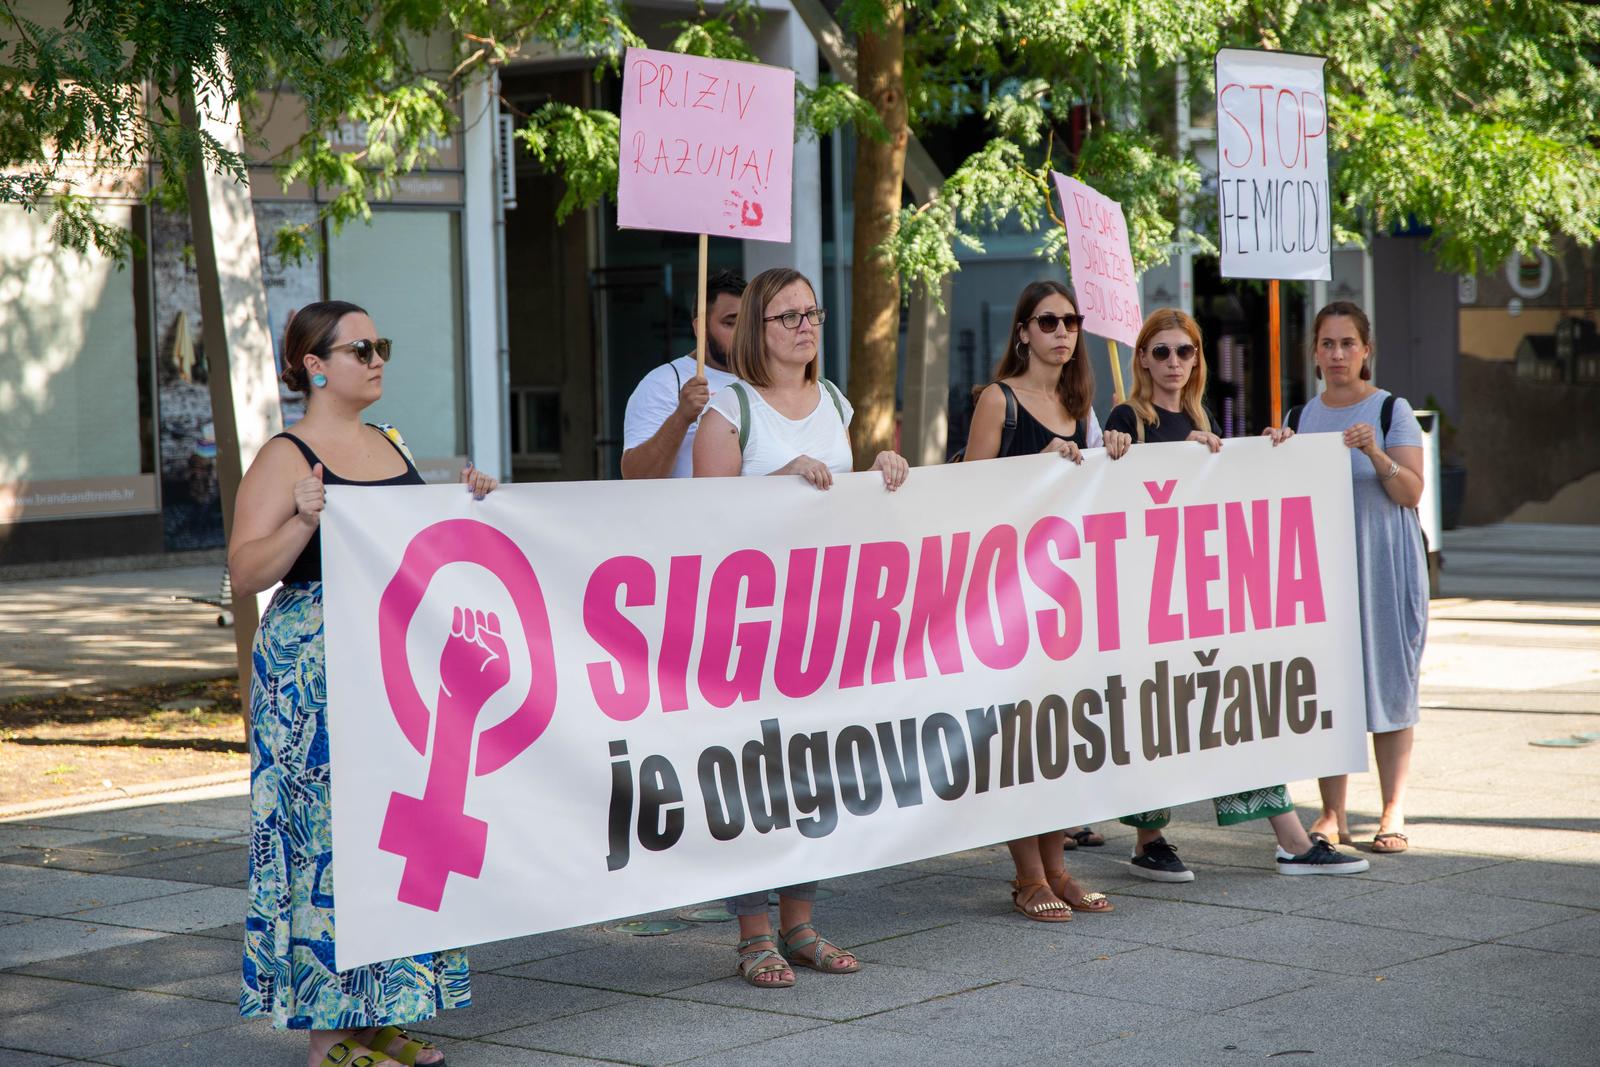 21.08.2023., Osijek - Ženske organizacije i inicijative organiziraju javnu akciju „Sigurnost žena je odgovornost države“ u 13 gradova u Hrvatskoj. Photo: Borna Jaksic/PIXSELL